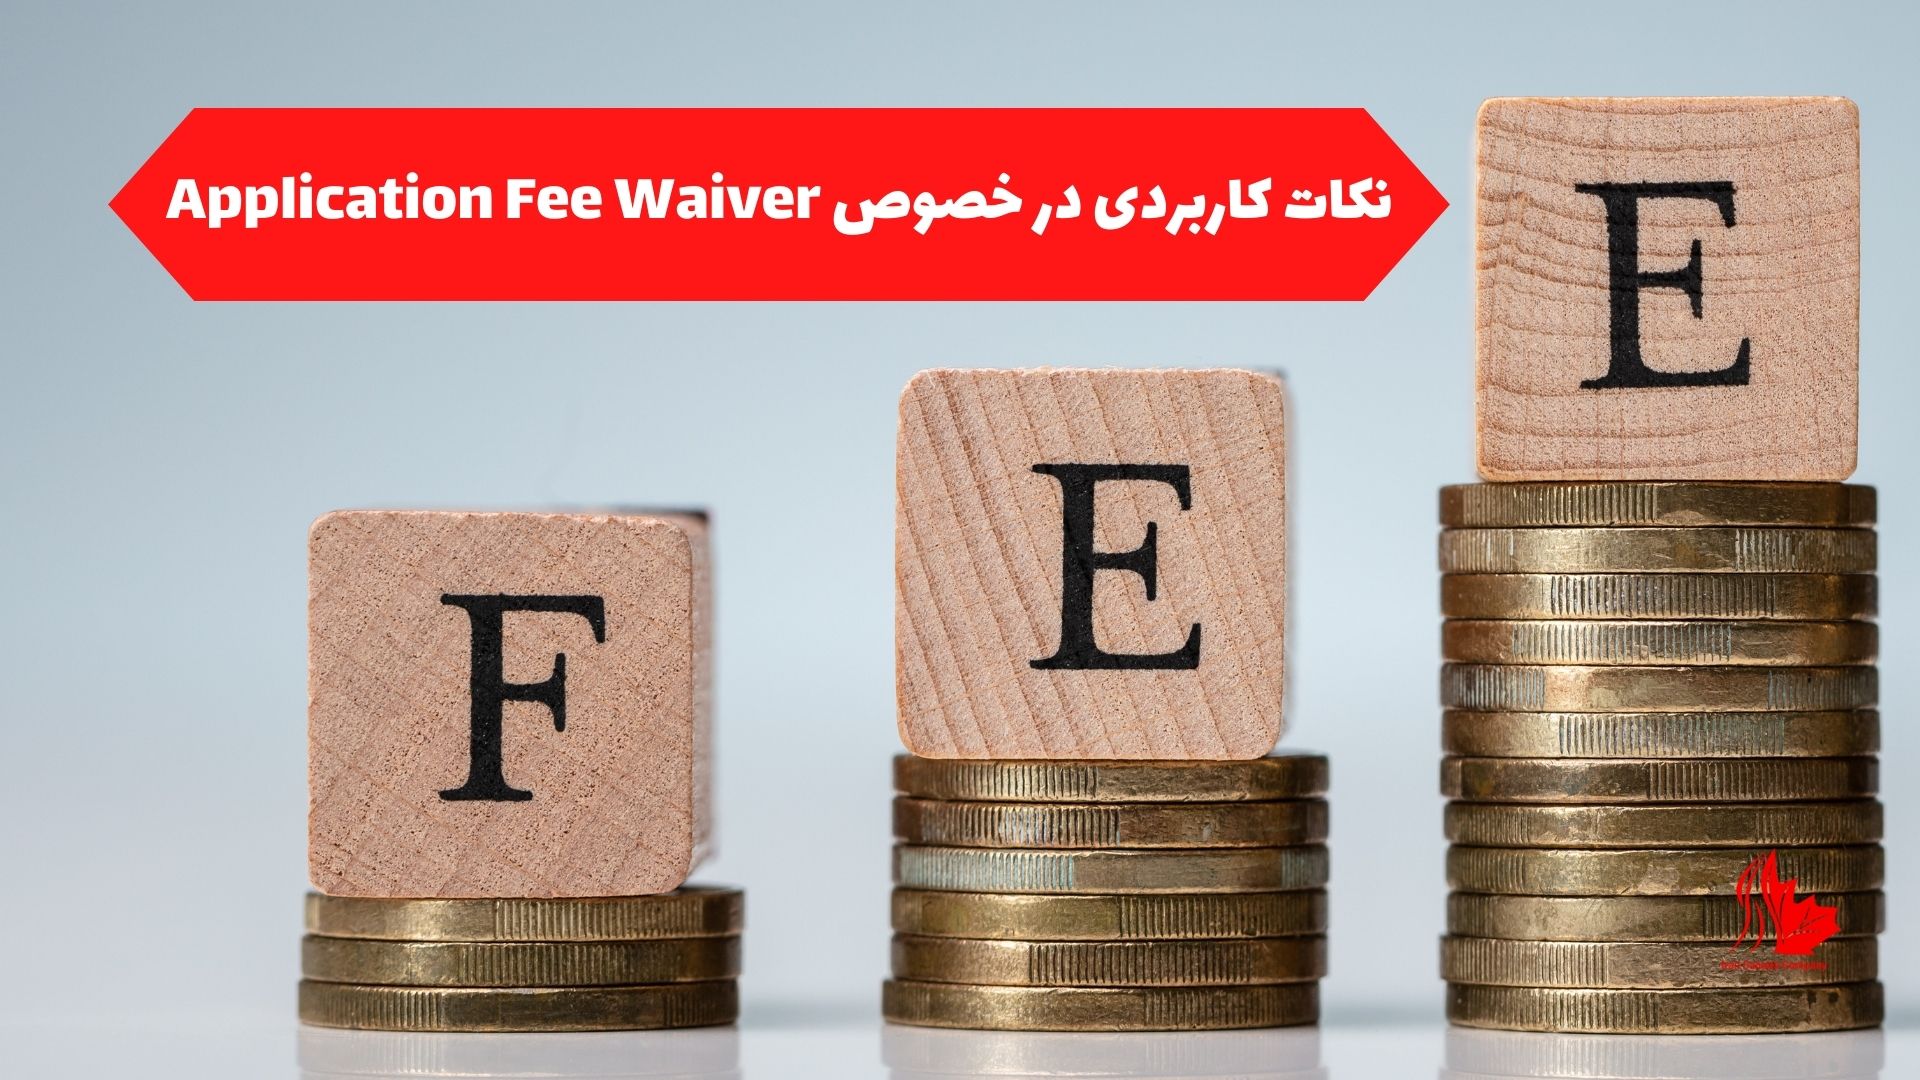 نکات کاربردی در خصوص Application Fee Waiver